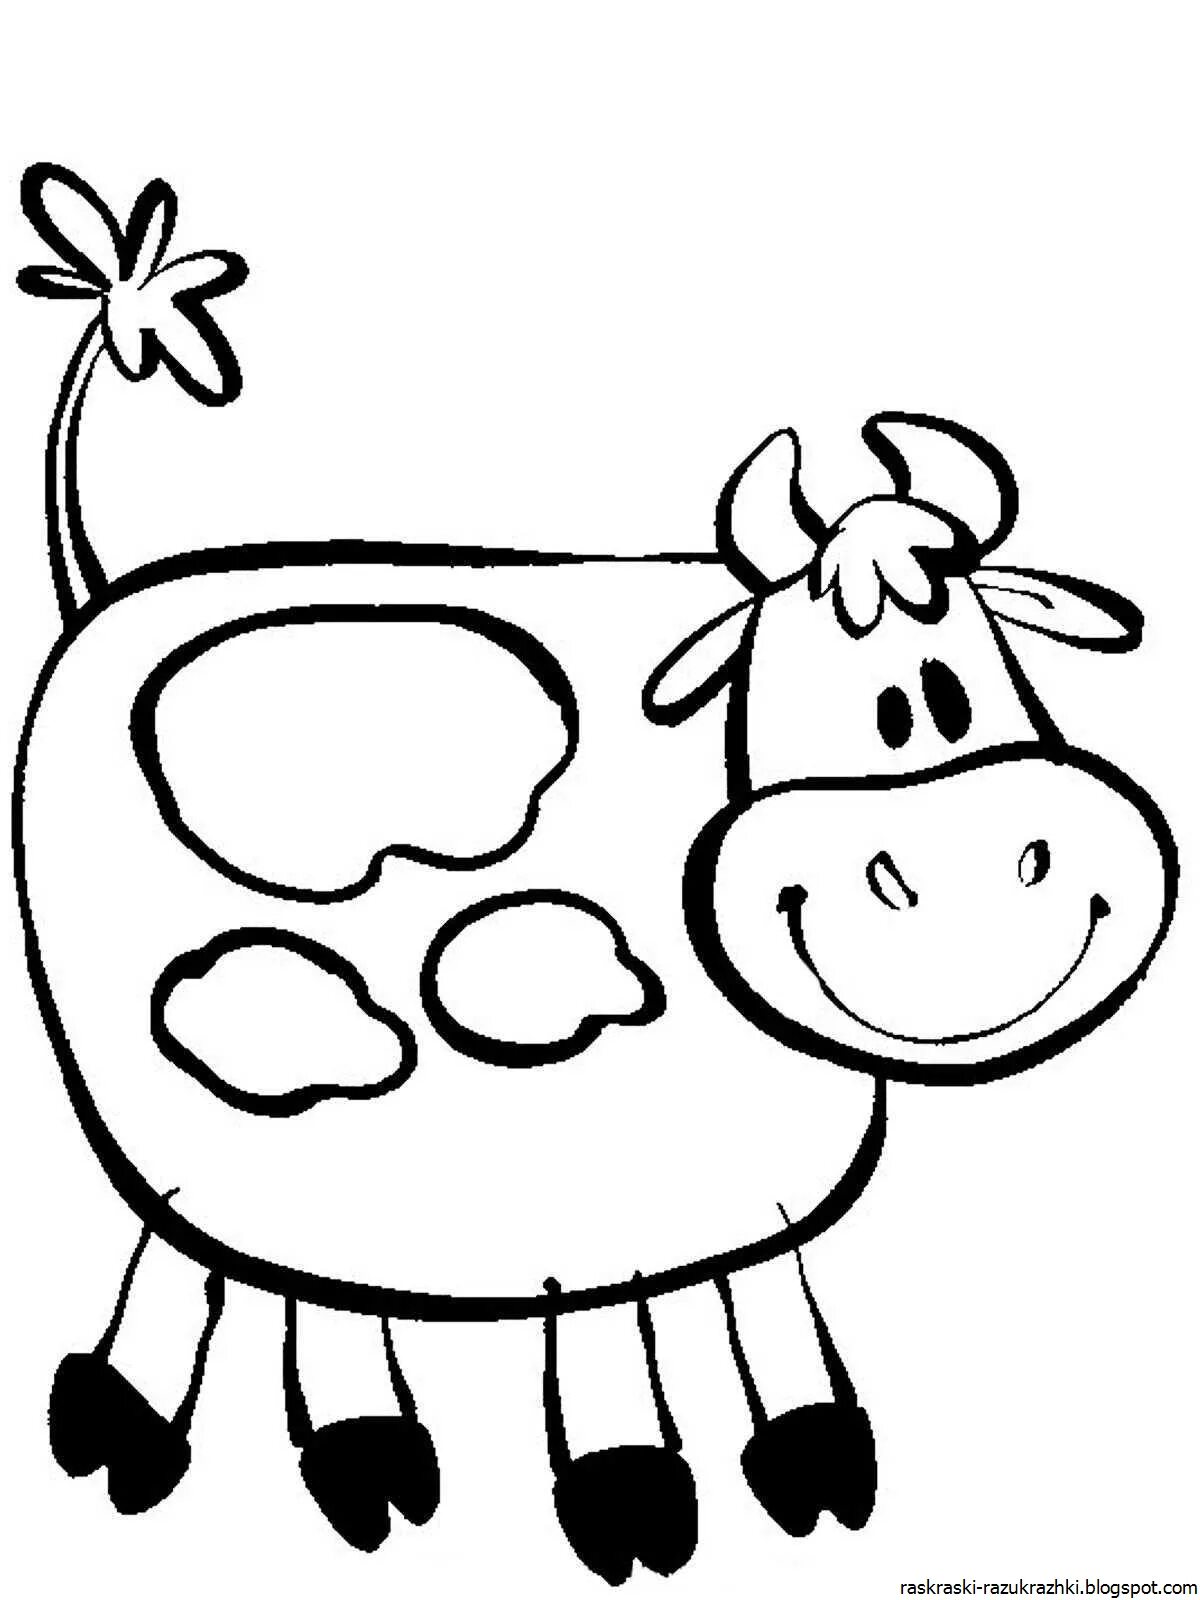 Раскраска корова. Корова раскраска для детей. Корова раскраска для малышей. Коровка раскраска для детей. Распечатать коровку раскраску